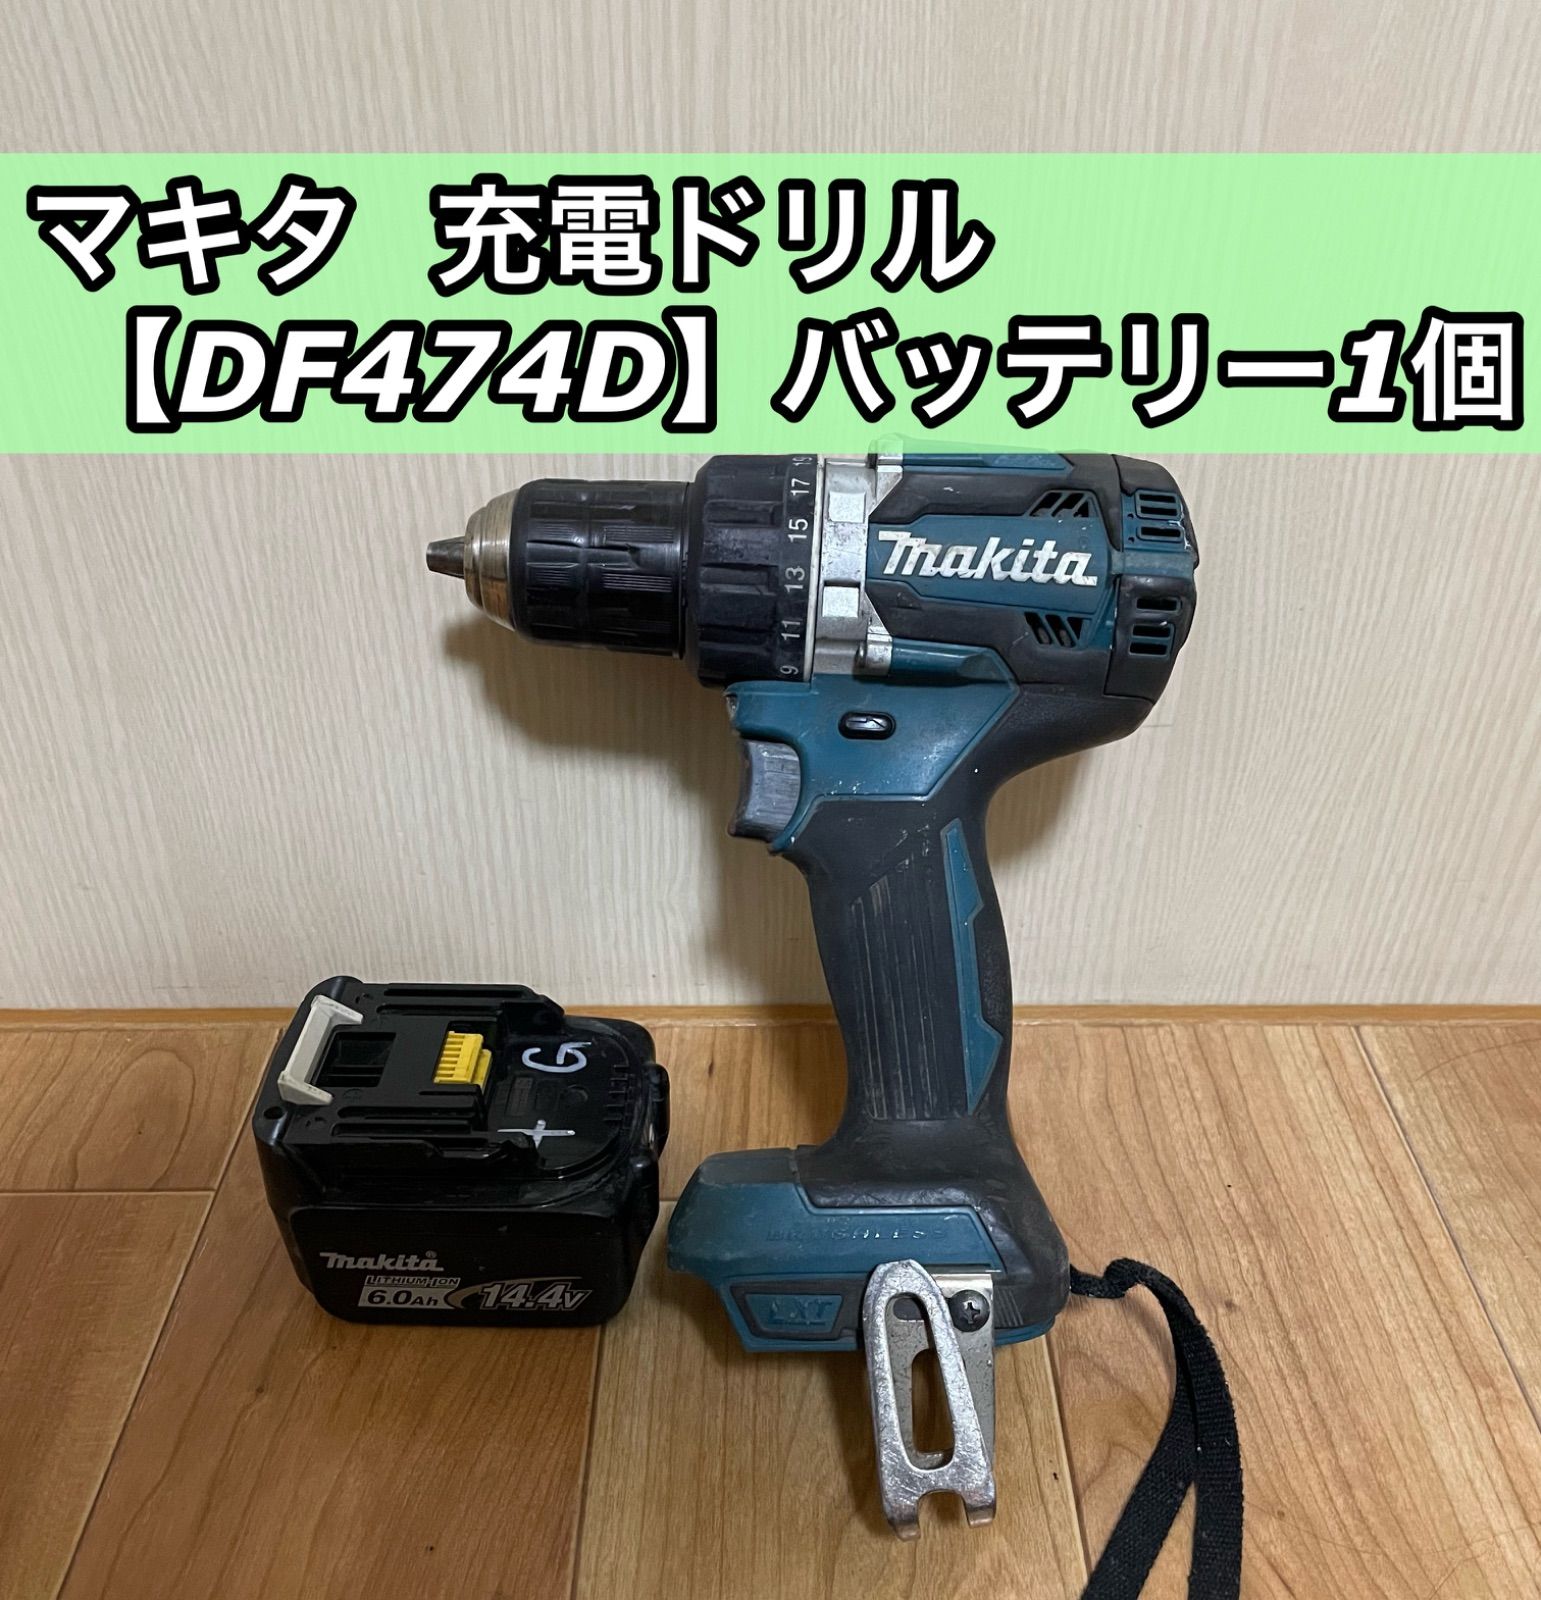 マキタ[makita] 14.4V 充電式ドライバドリル DF474DZ - 電動工具